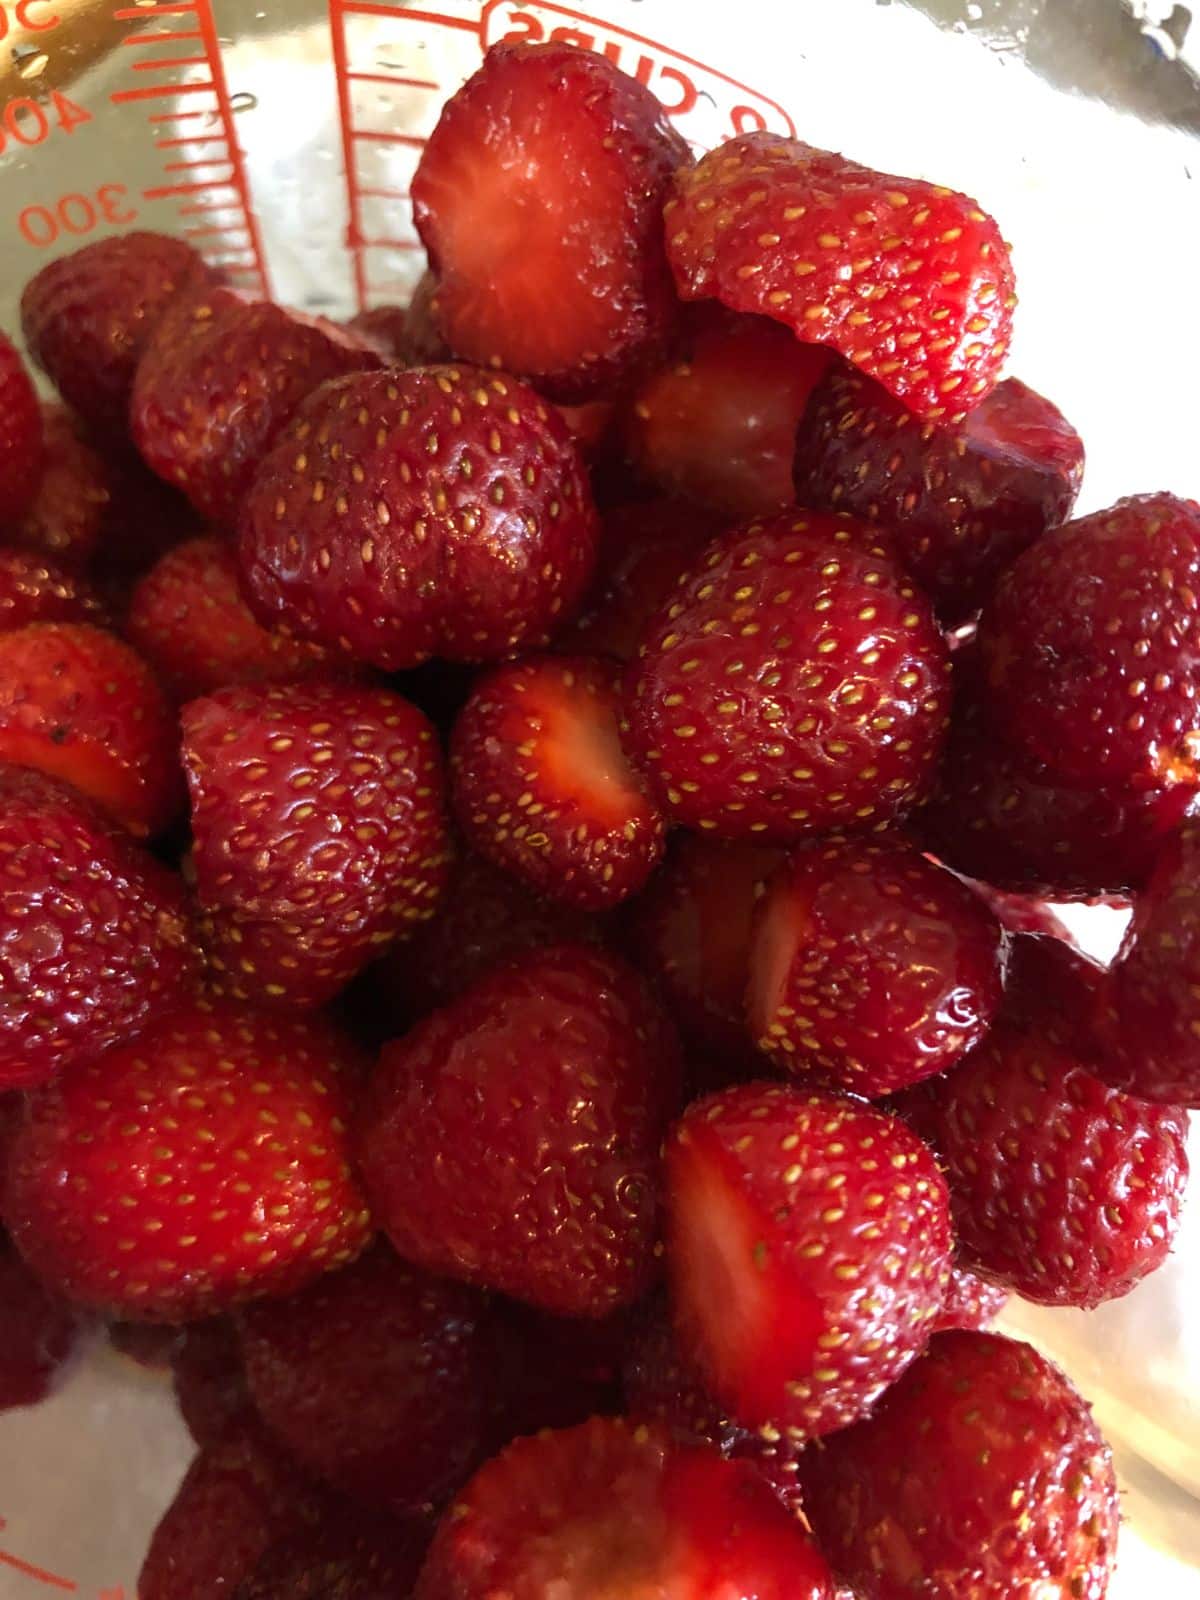 Strawberries prepped for jam making